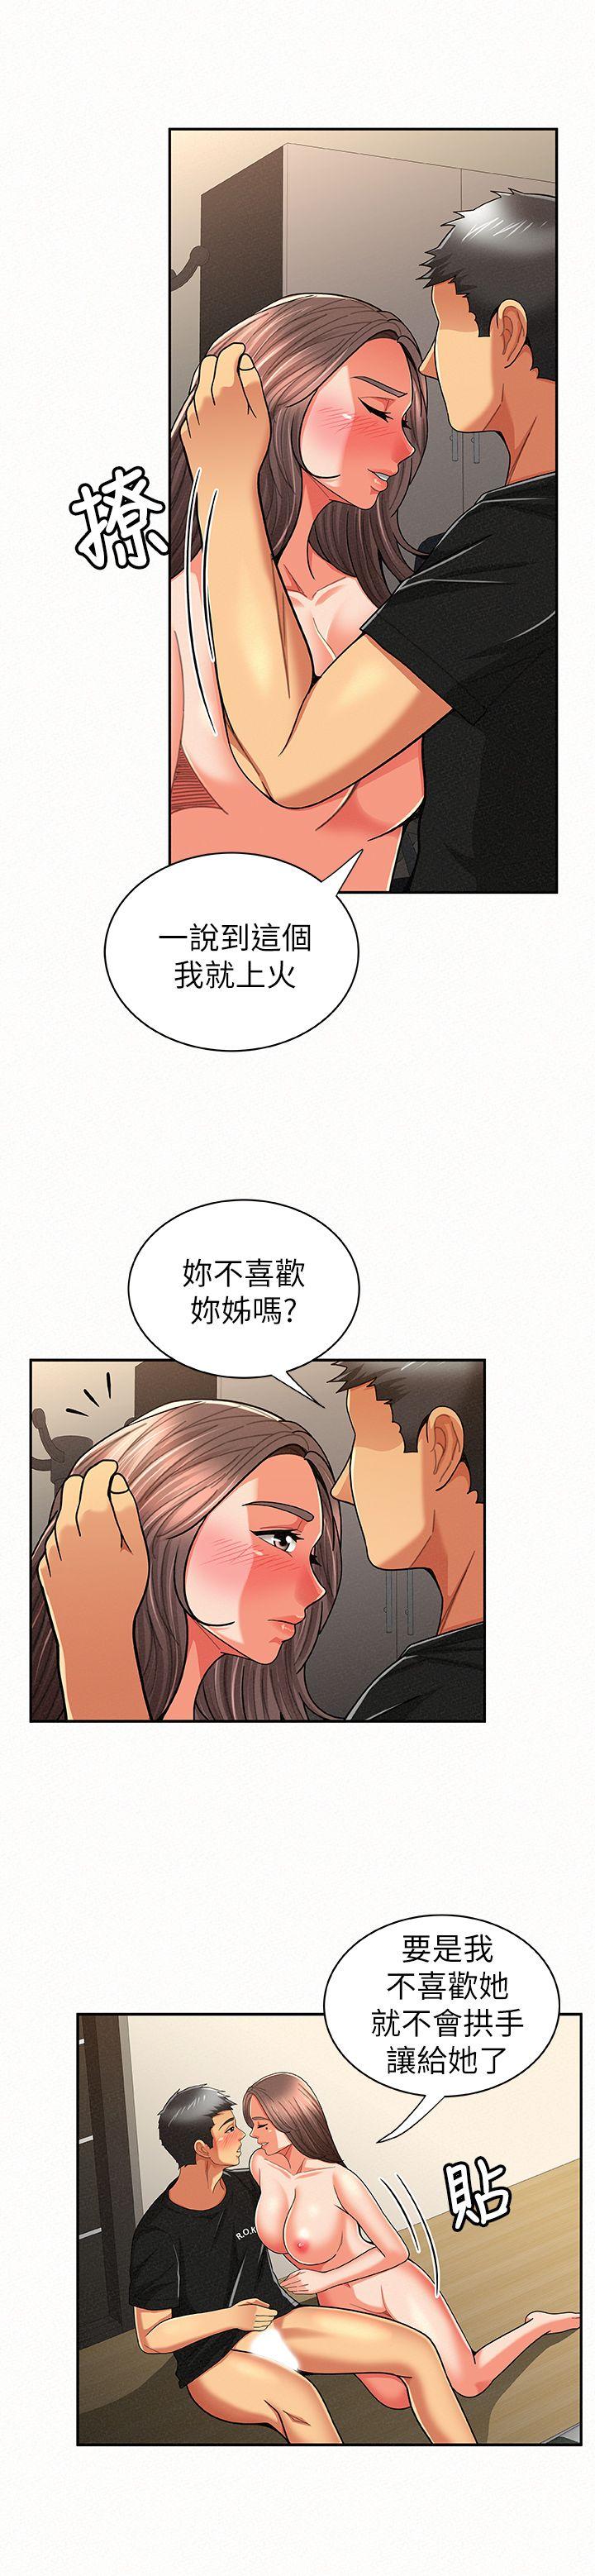 韩国污漫画 報告夫人 第22话-让你明白我的心意 5